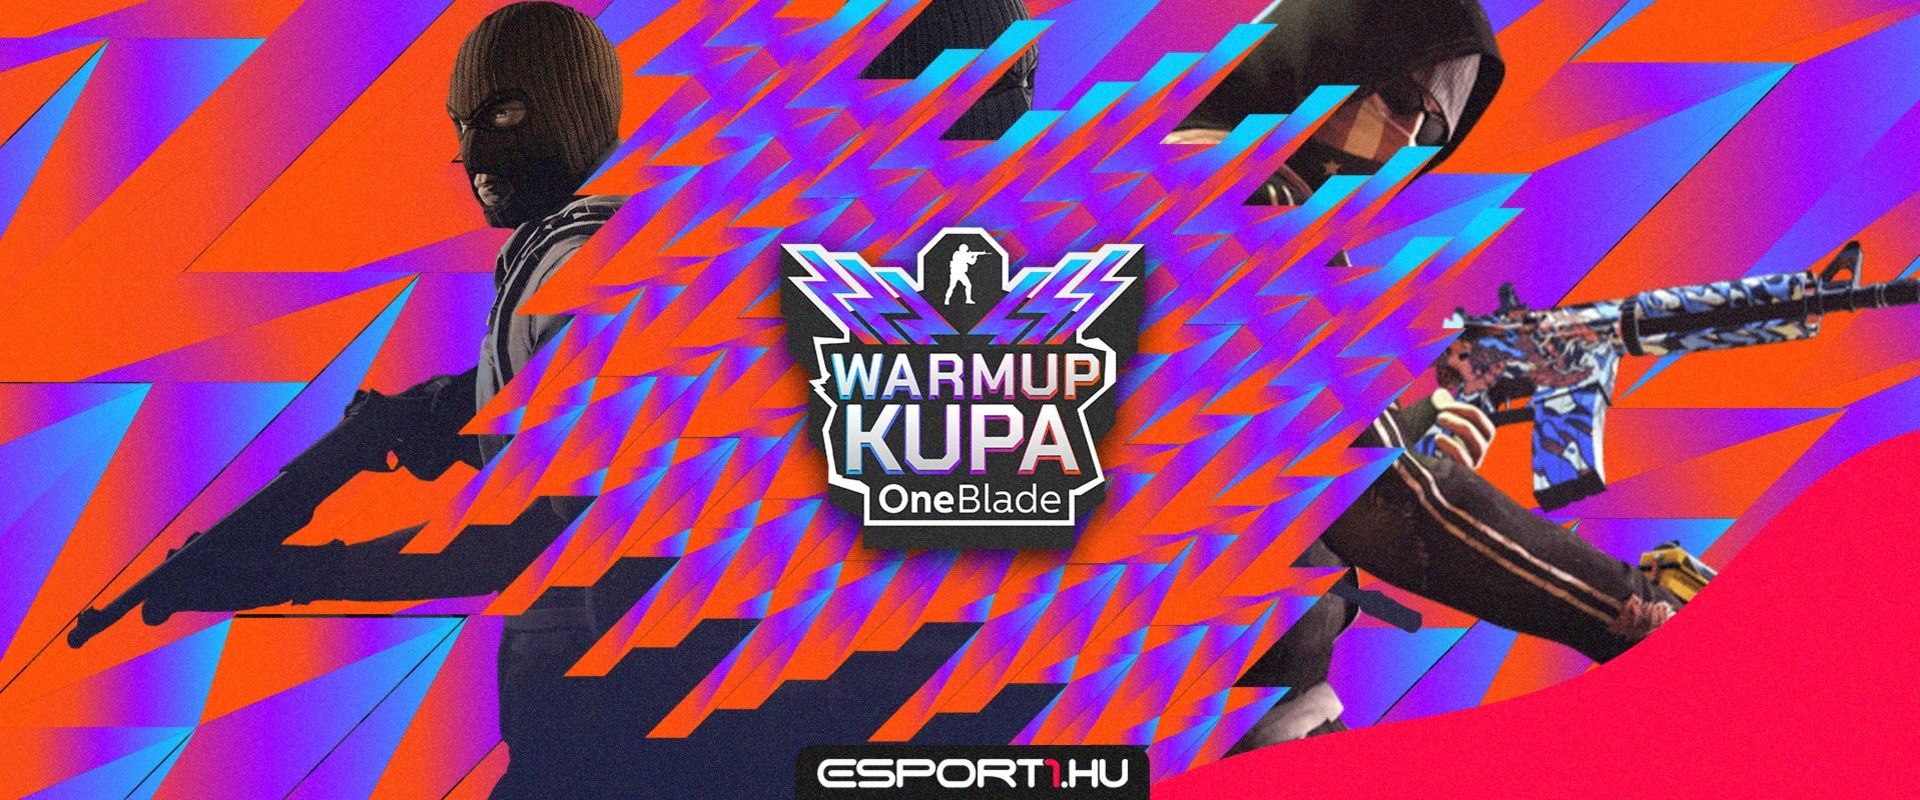 Vége a selejtezőnek, íme a mai OneBlade CS:GO Warmup kupa mezőnye!